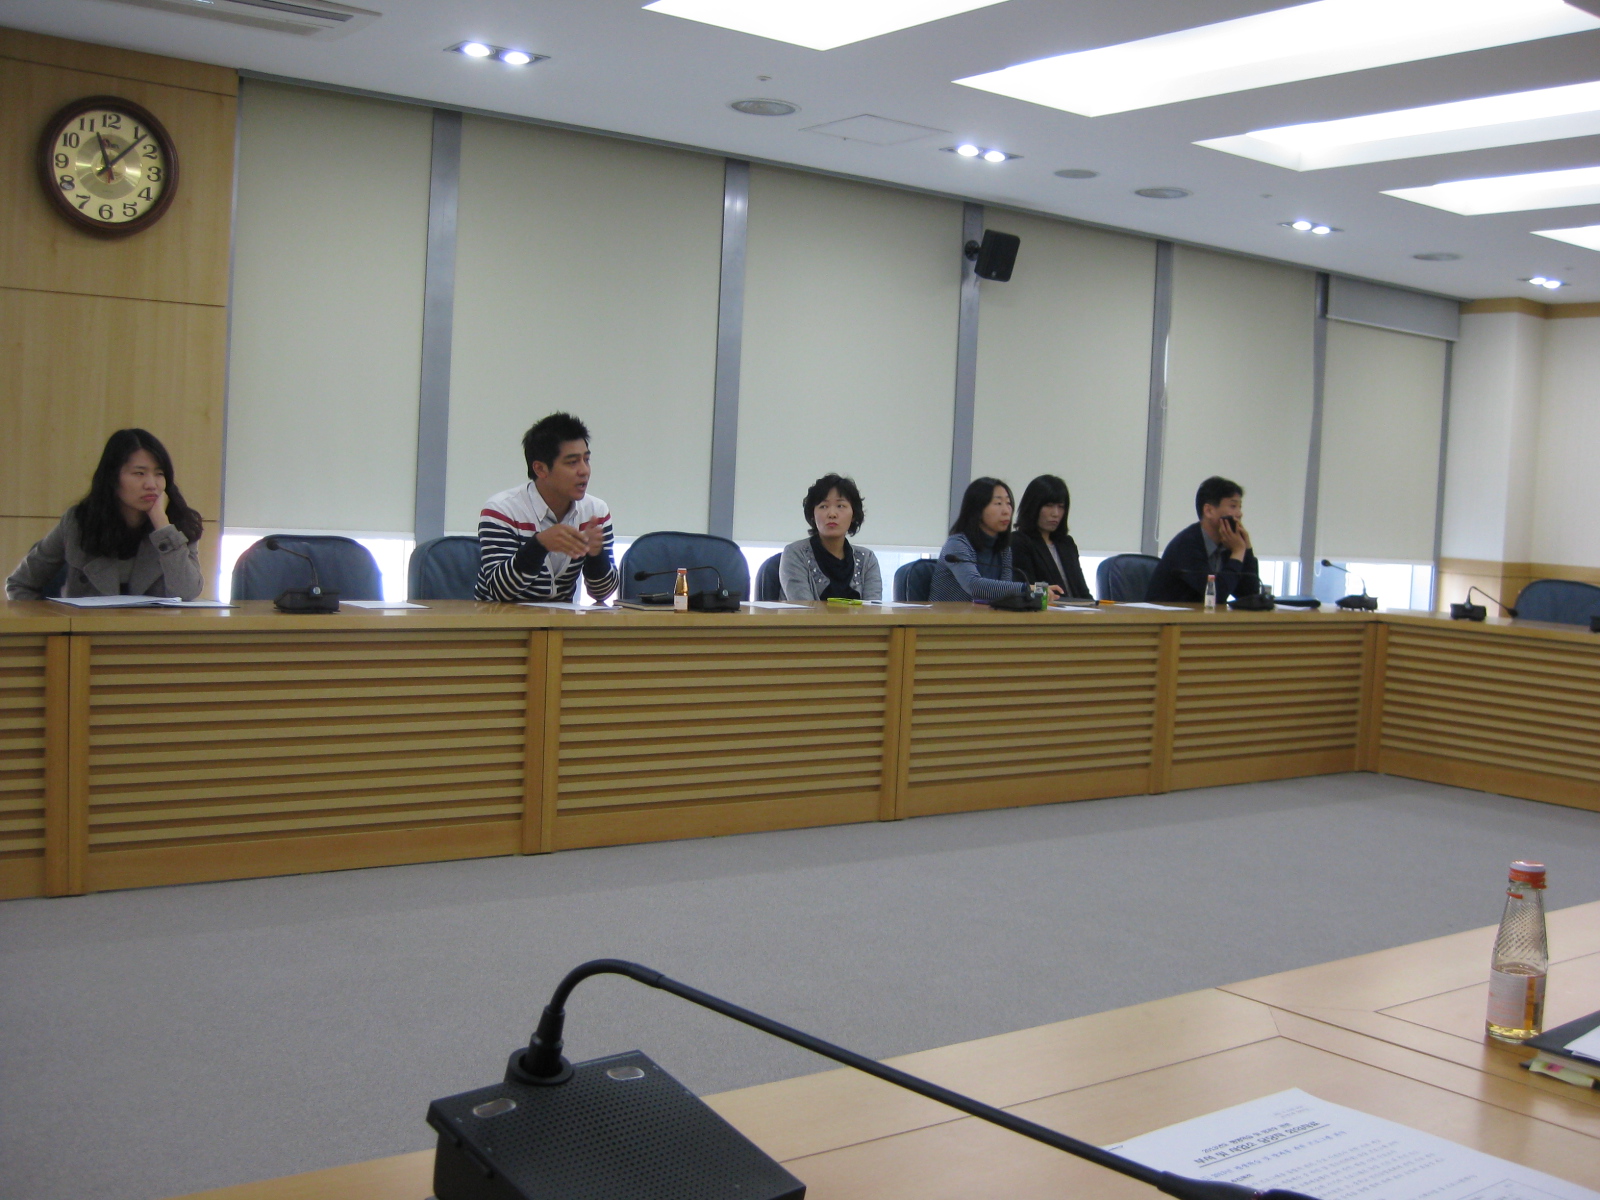 2013년도 평생학습 및 방과후학교 관련 부서(사업소) 담당자회의 개최 사진자료